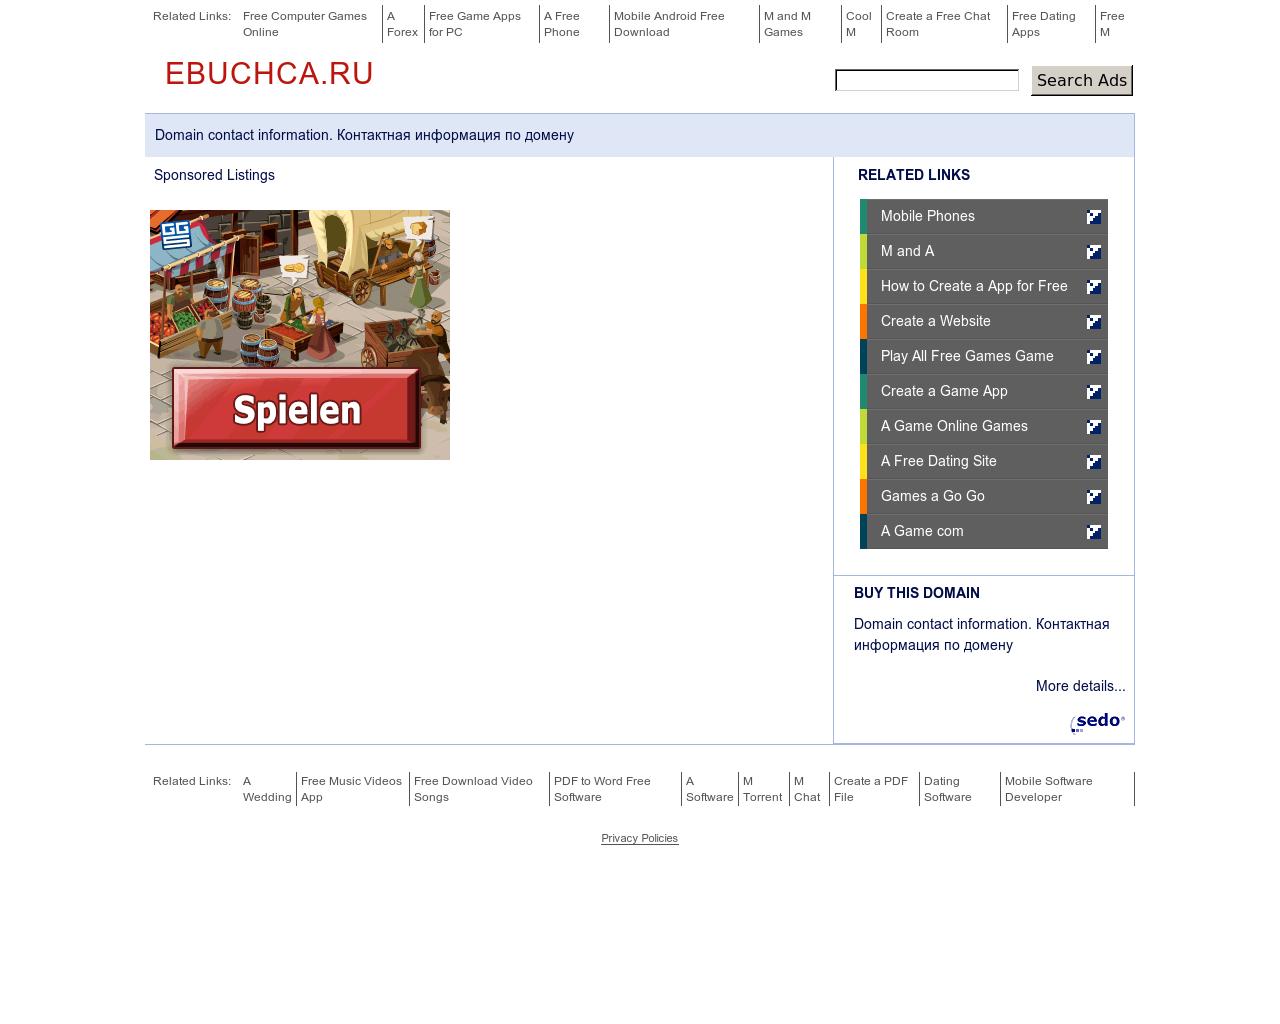 Изображение сайта ebuchca.ru в разрешении 1280x1024